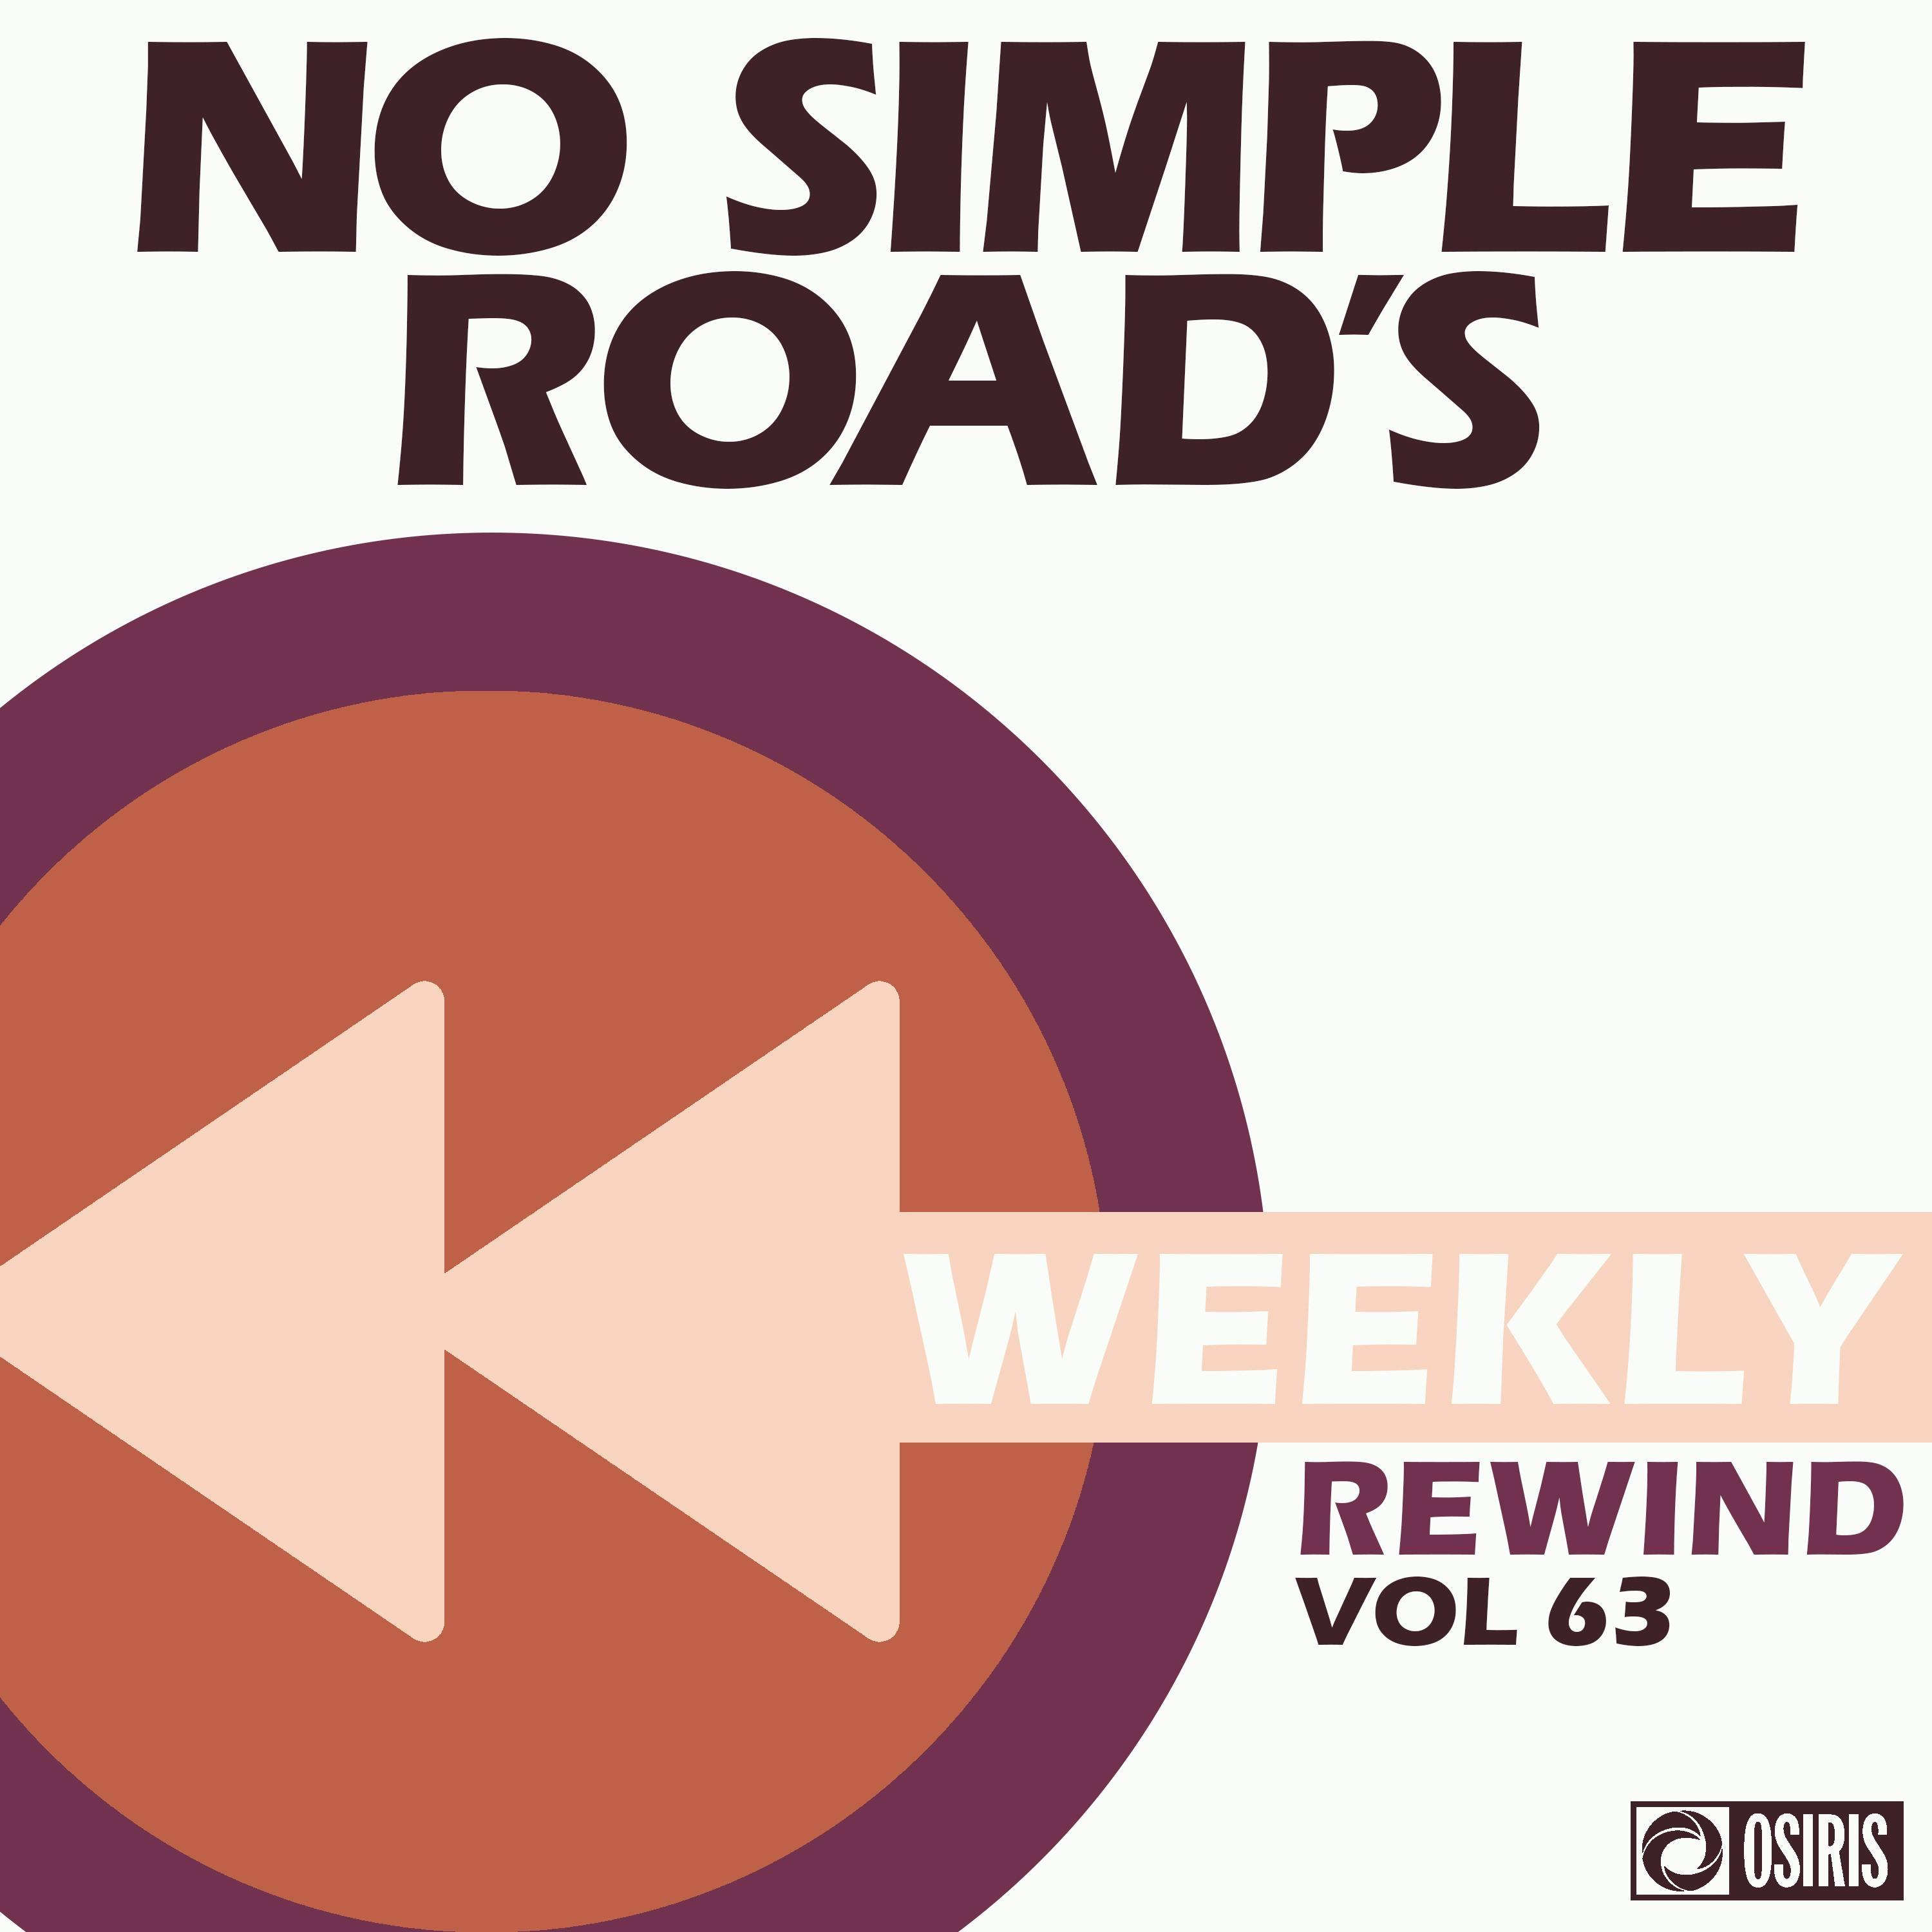 No Simple Road's Weekly Rewind Vol. 63